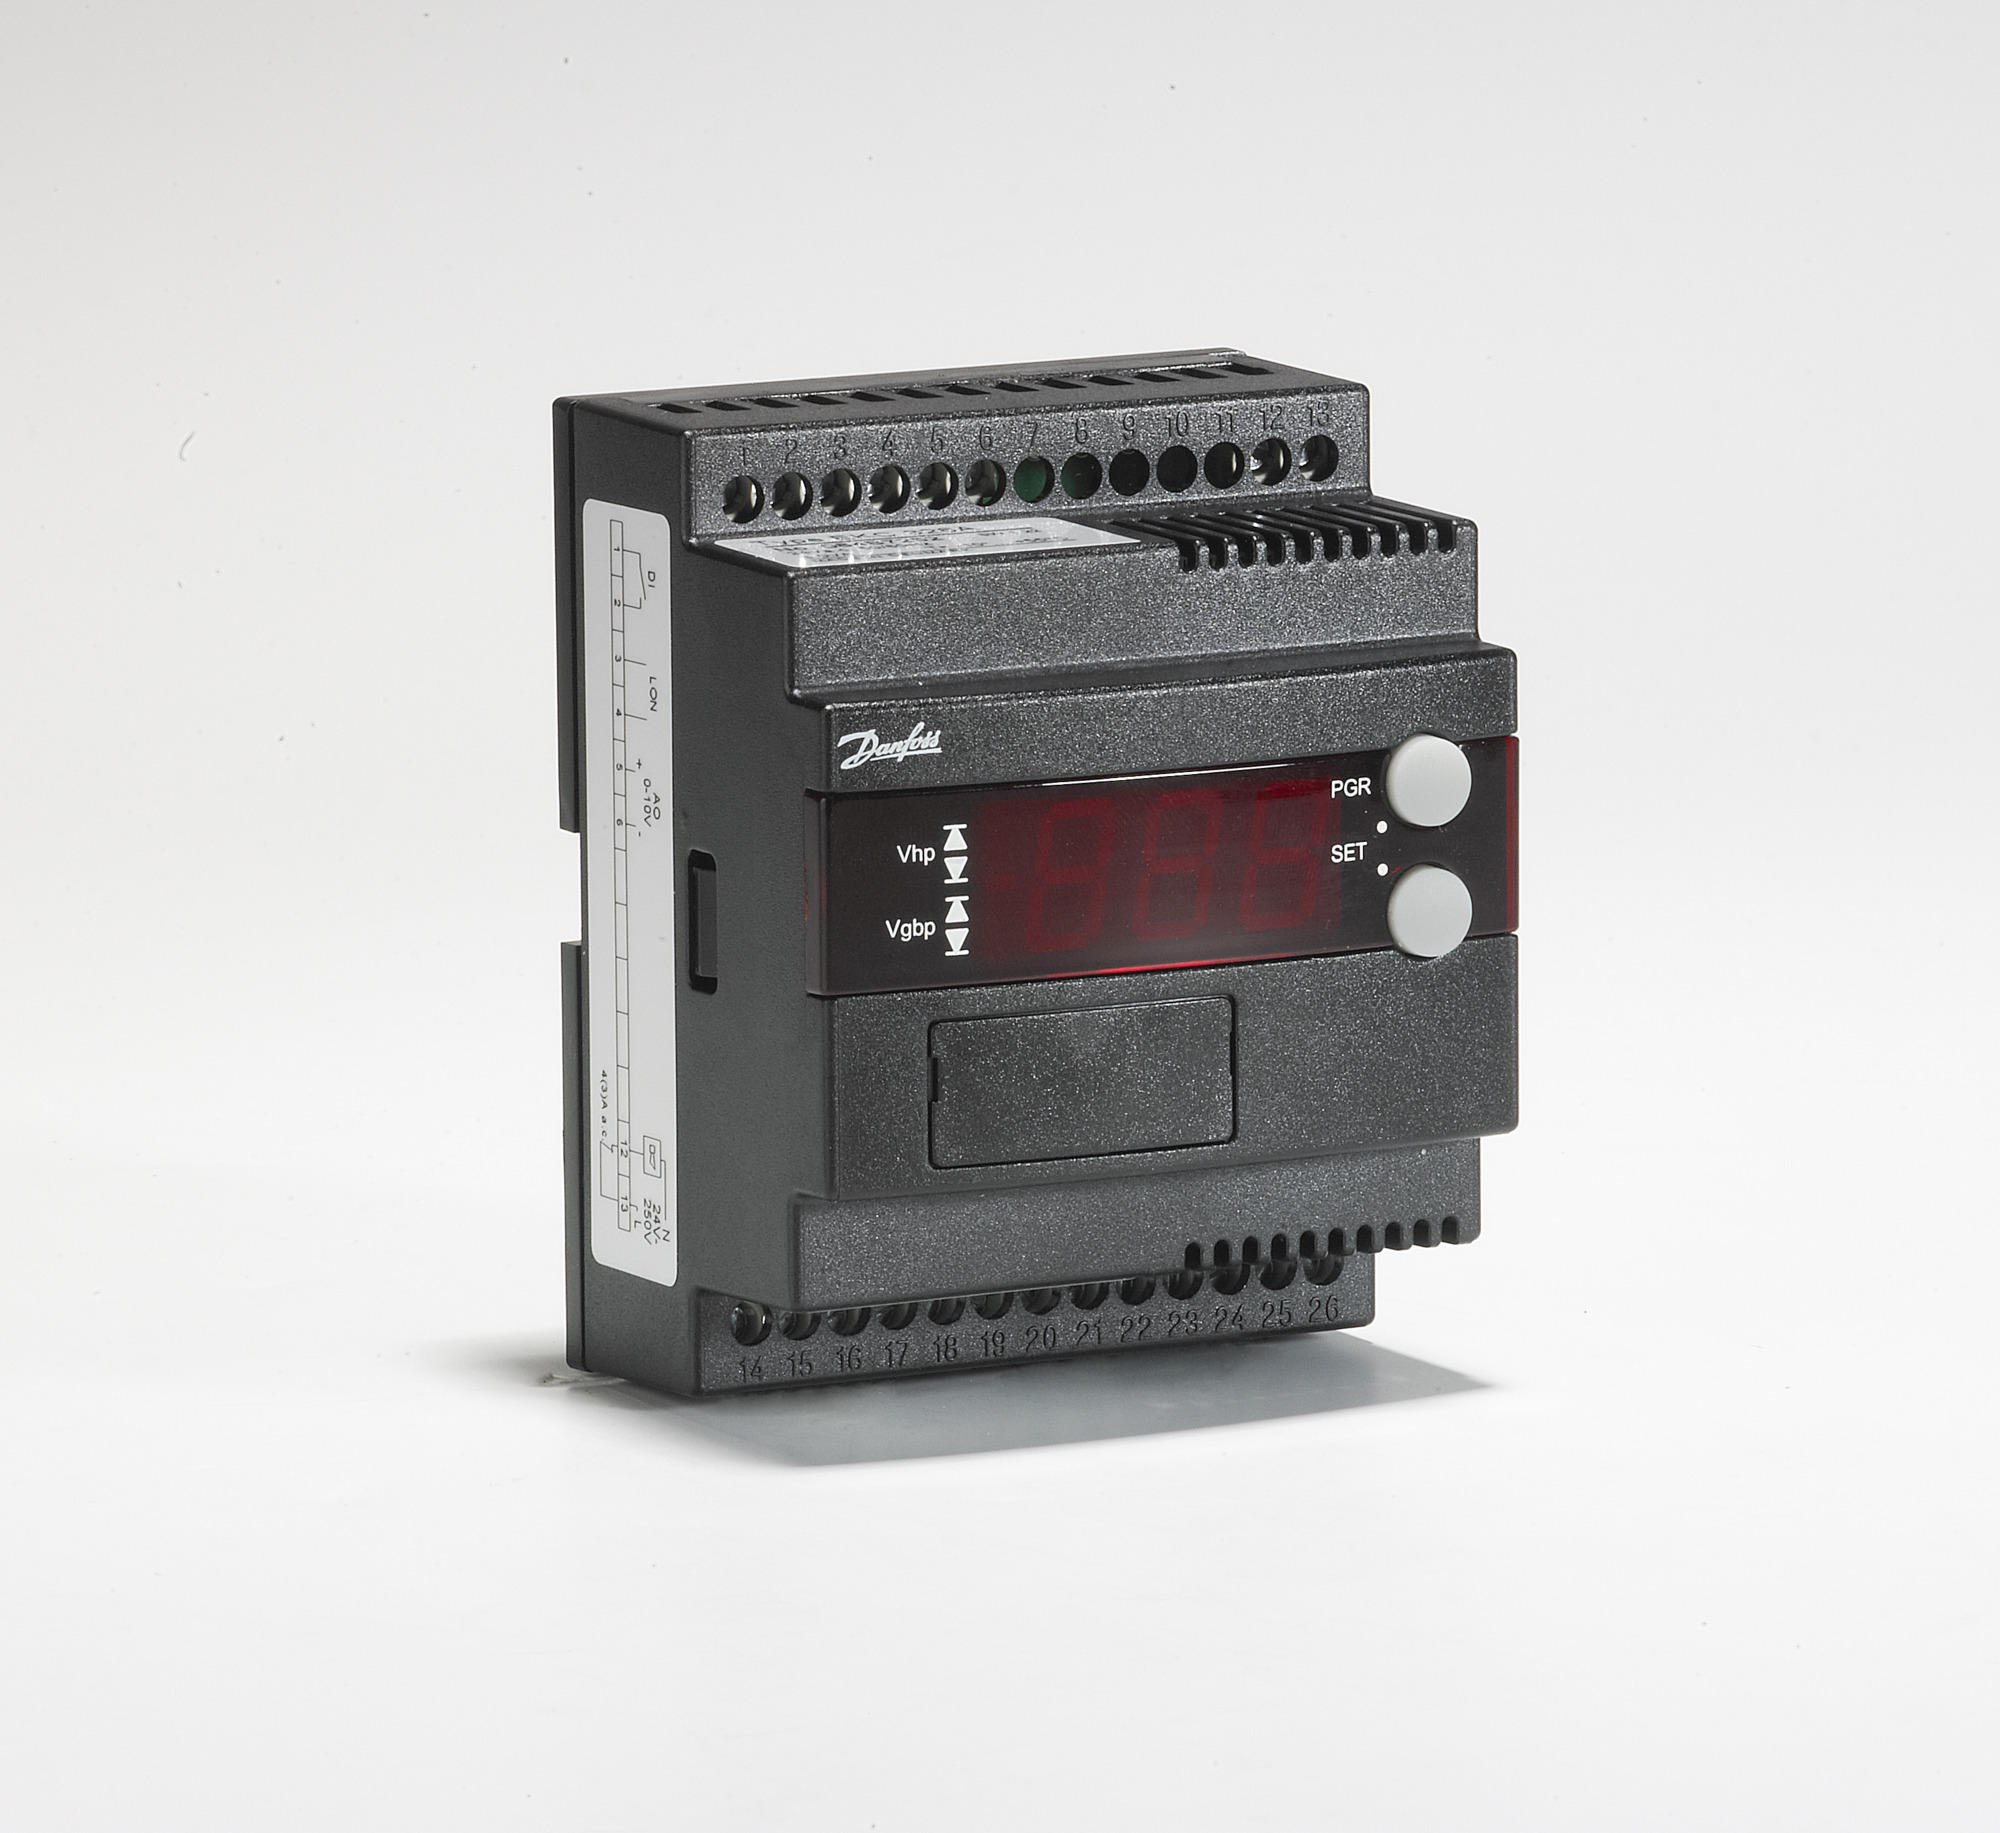 Gas cooler controller, EKC 326A